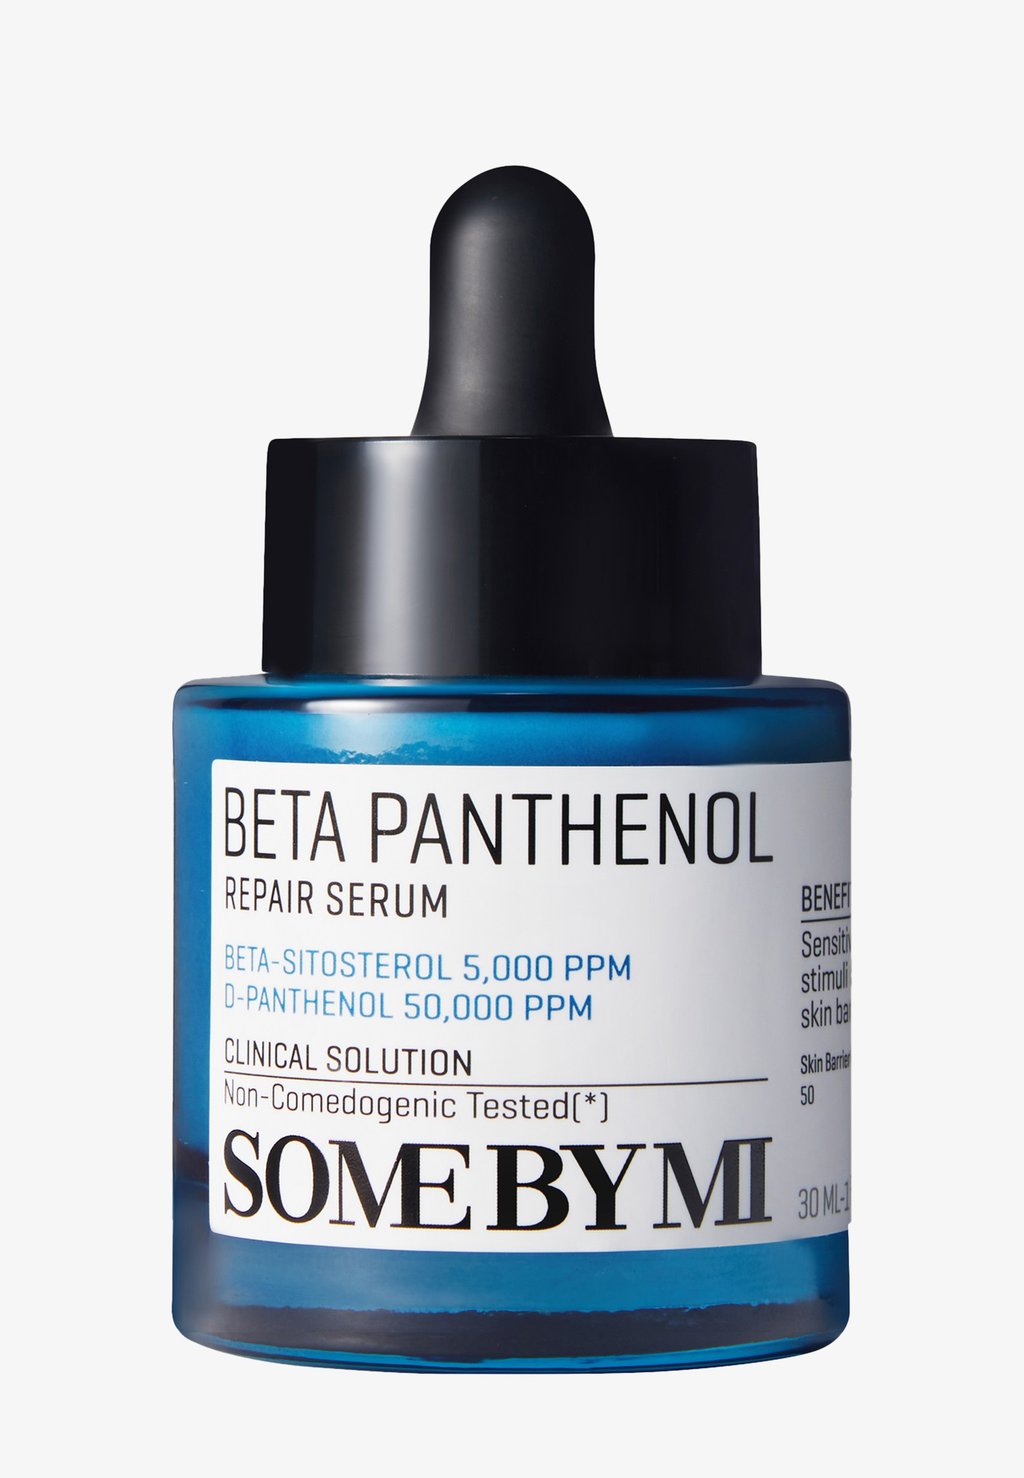 Сыворотка Beta Panthenol Repair Serum SOME BY MI